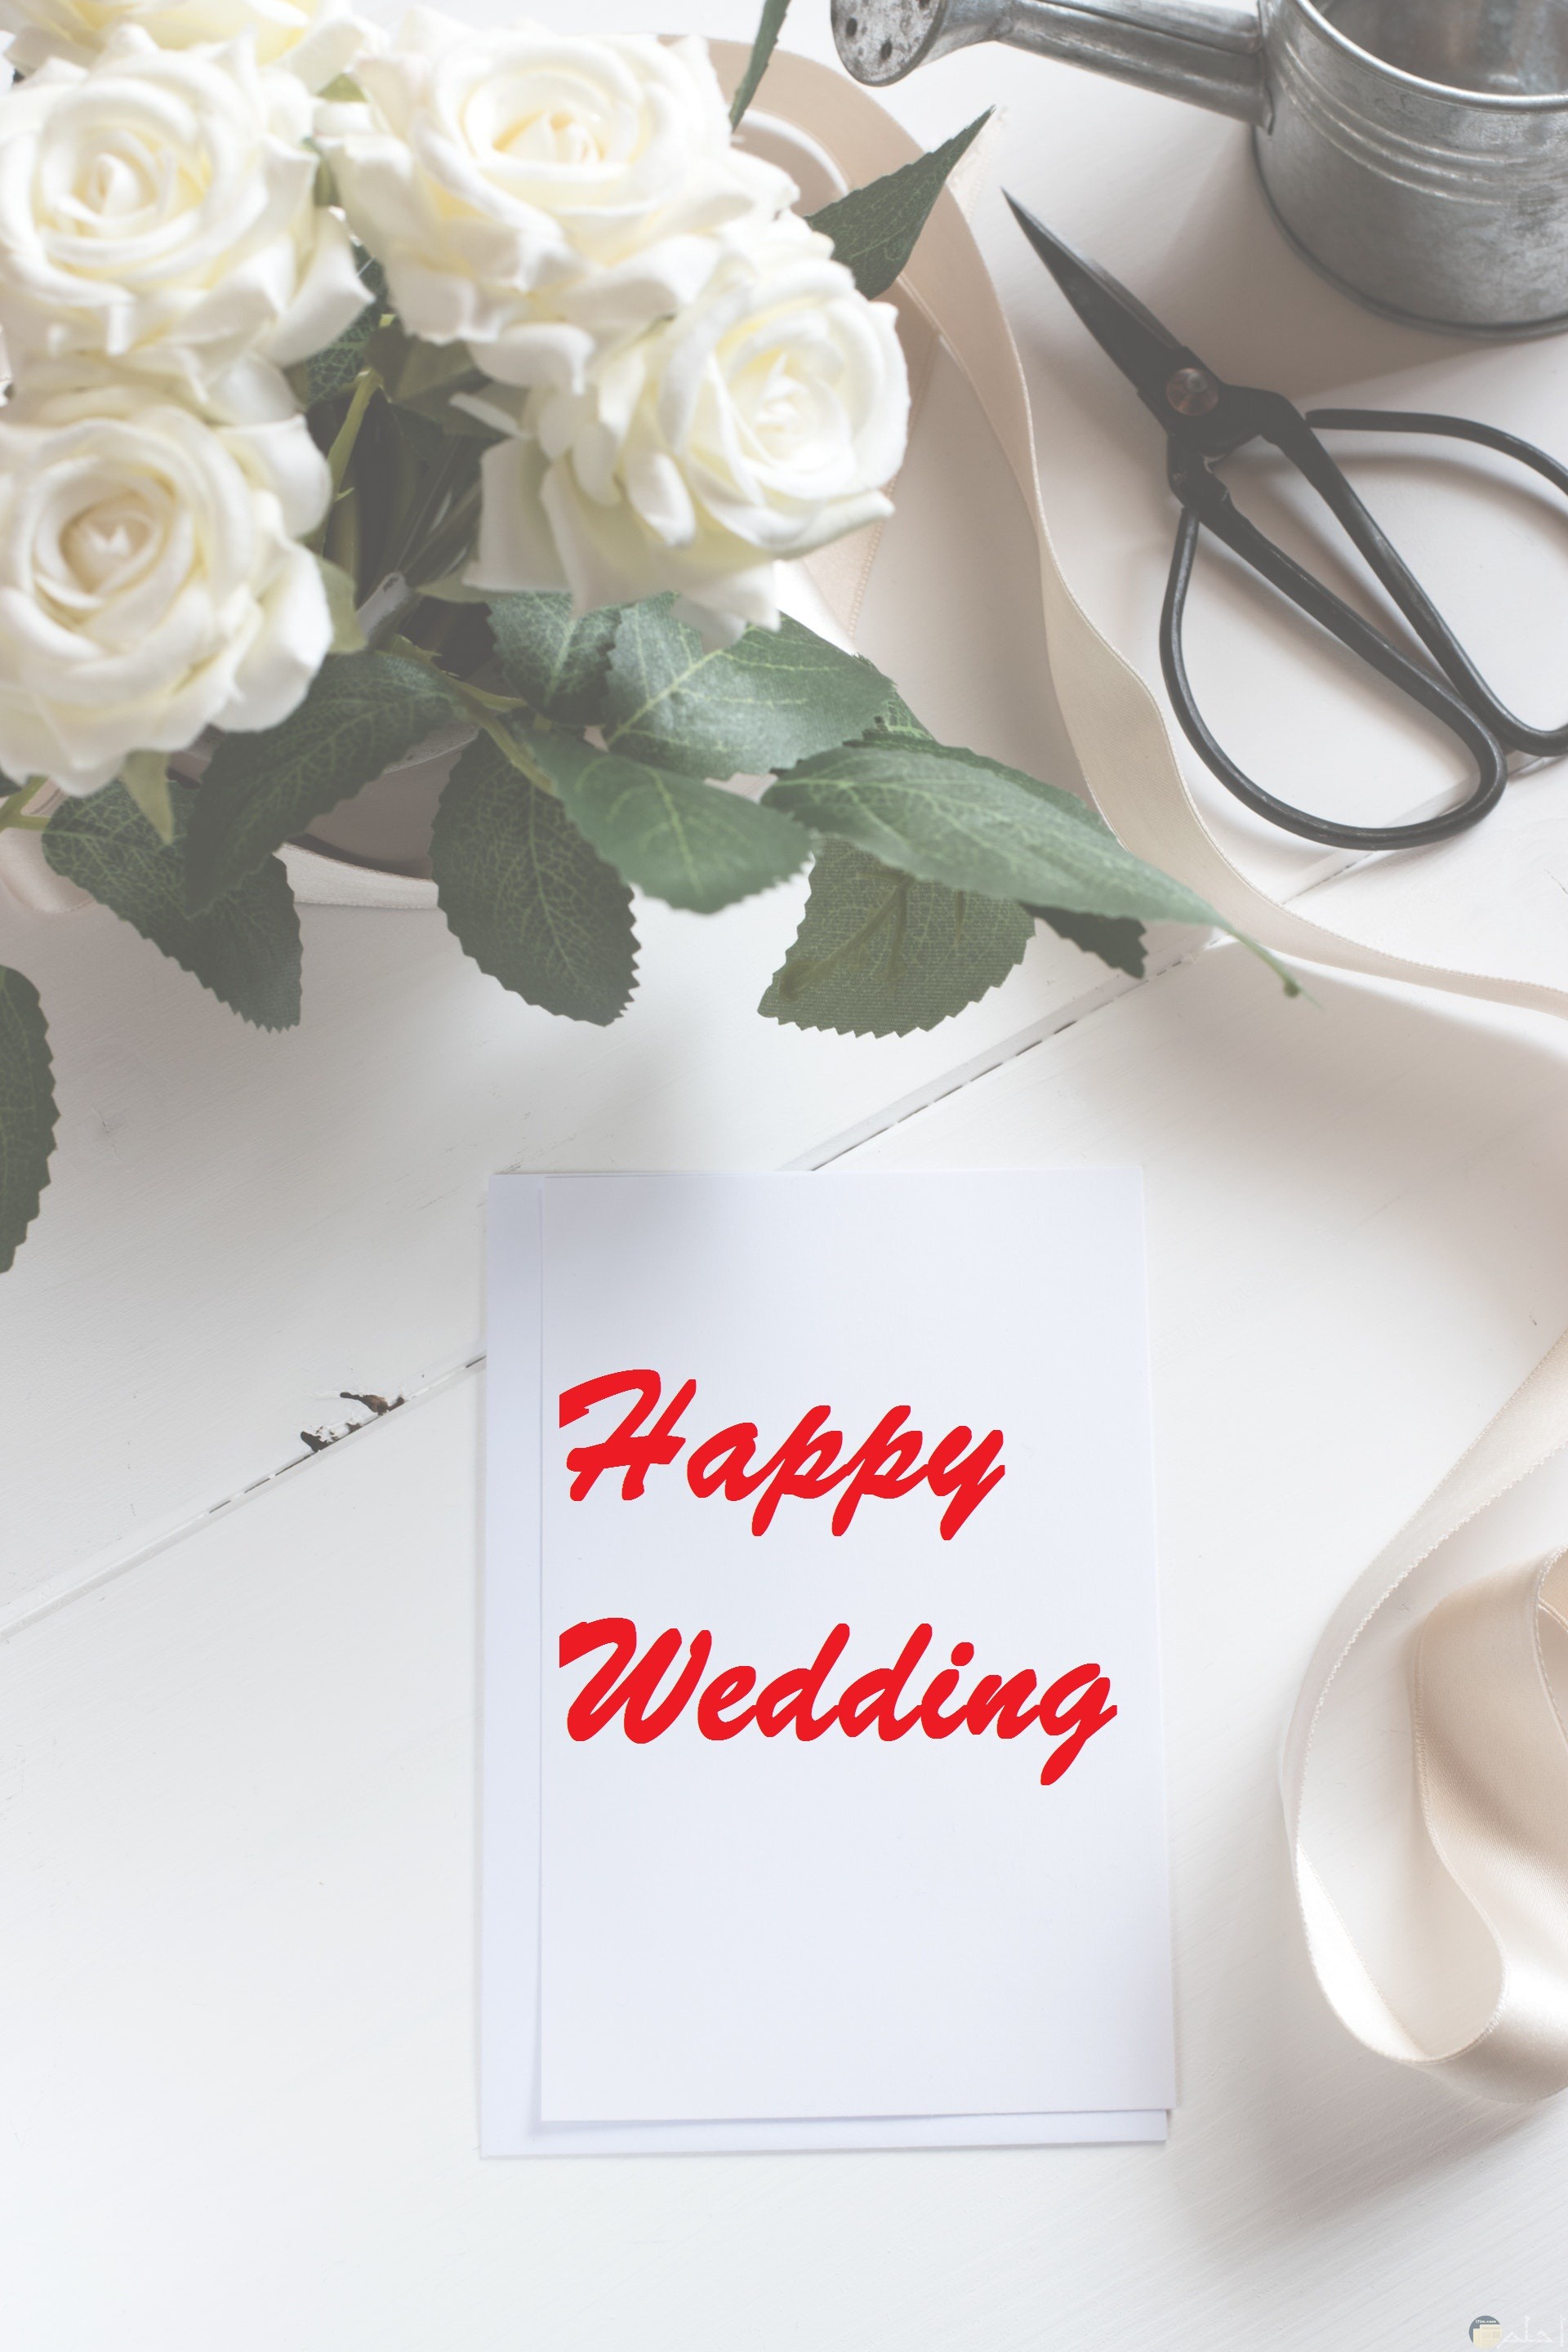 صورة تهنئة مميزة مكتوب عليها happy wedding حولها زهور بيضاء